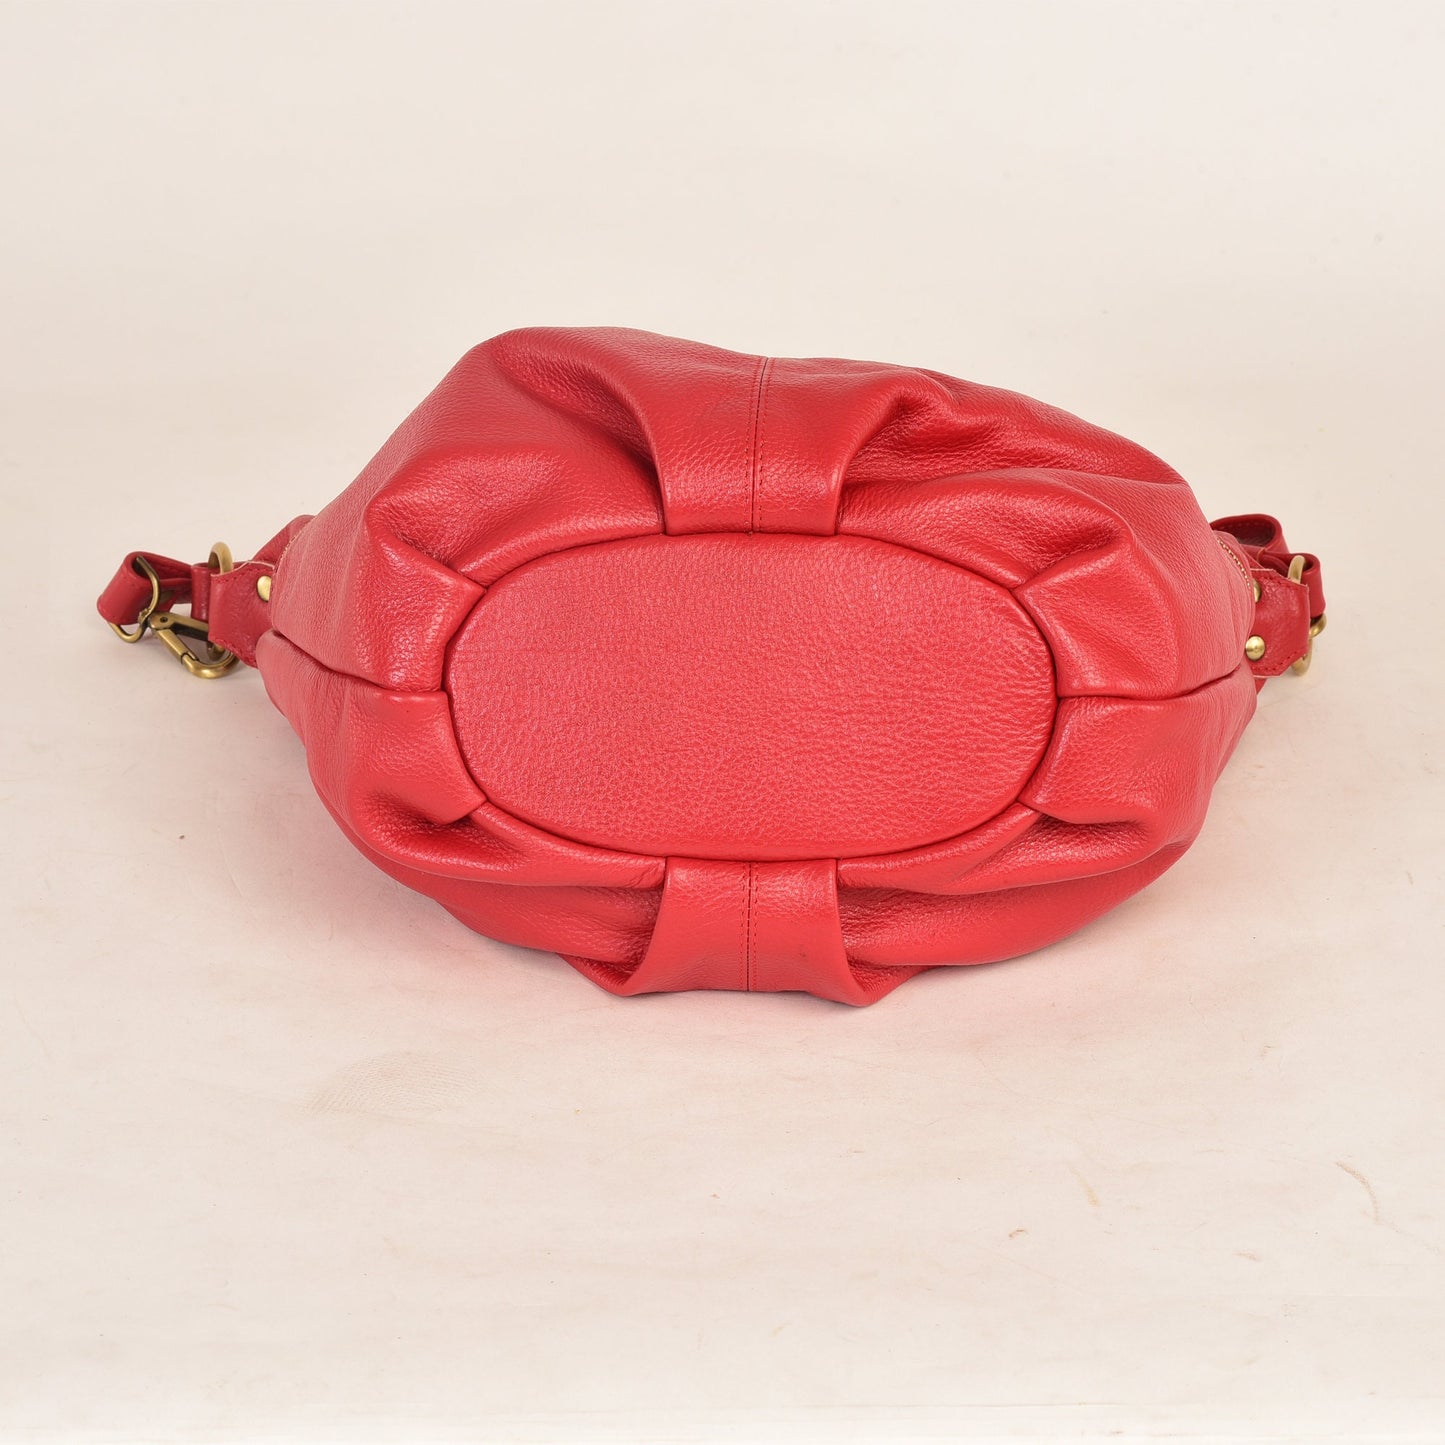 Red Leather Shoulder Hobo Bag - Everyday Crossbody Leather Purse - Red Leather Handbag - Women's Leather Bag - Leather Shoulder Bag